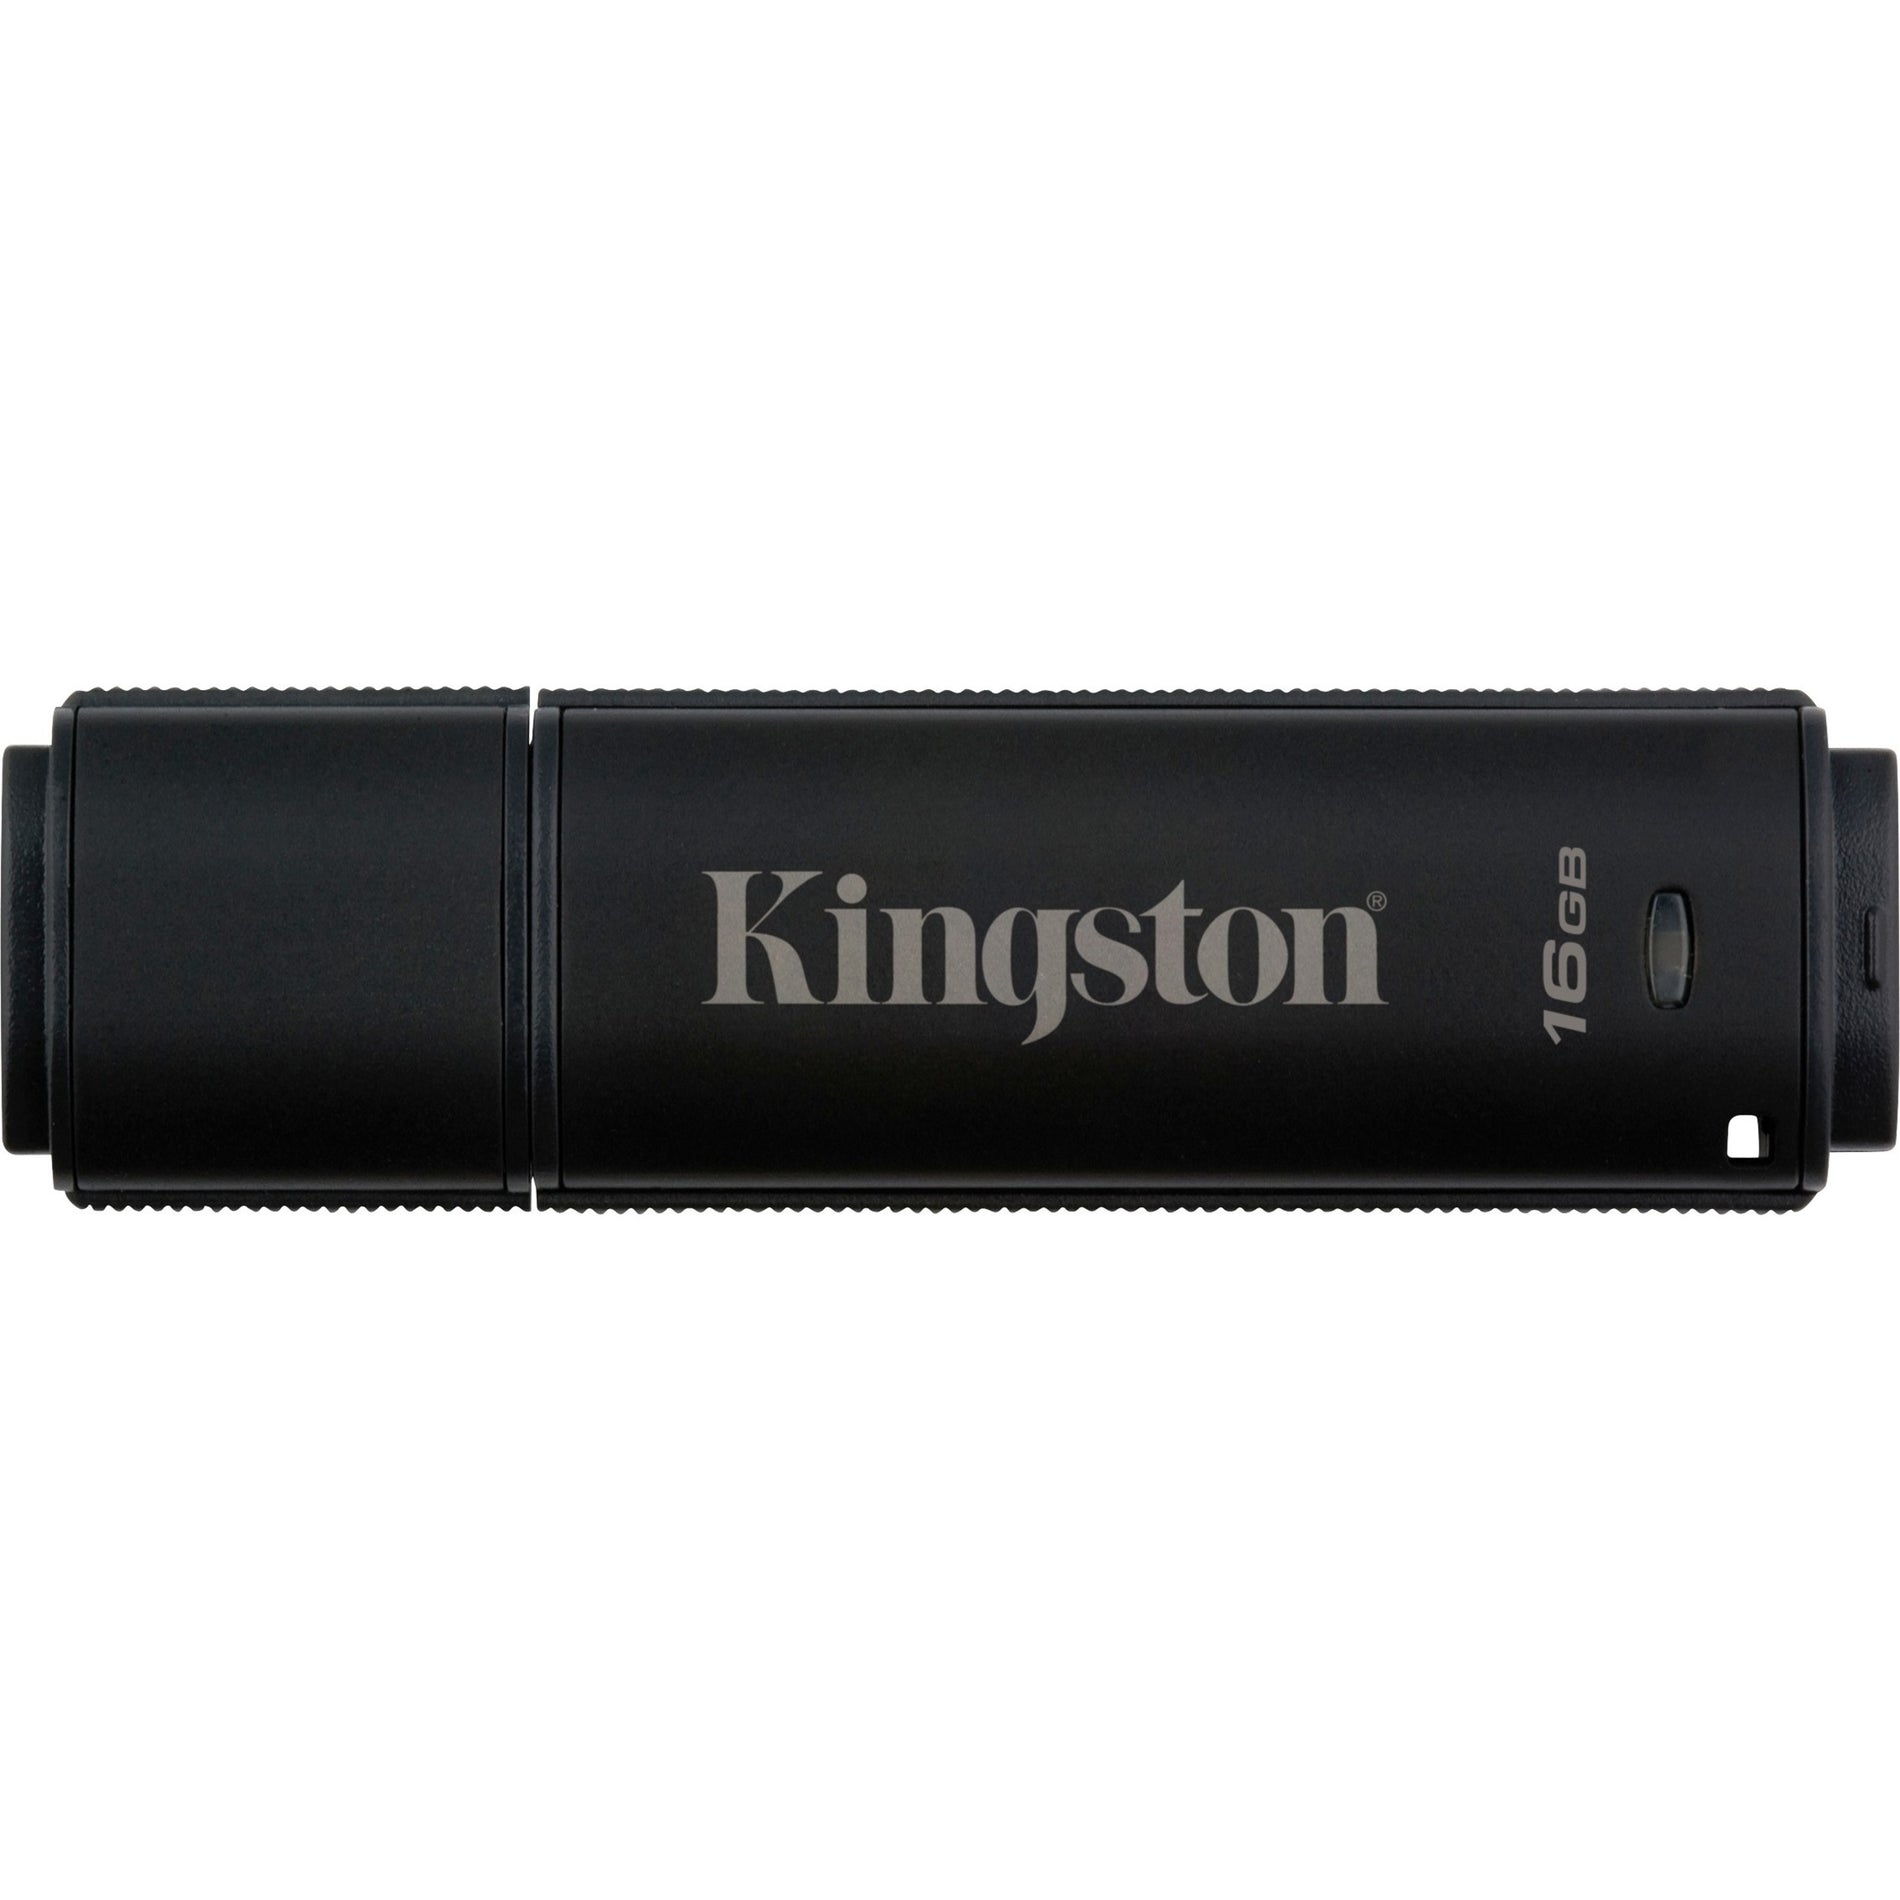 Kingston DT4000G2DM/16GB DataTraveler 4000 G2 16GB USB 3.0 Flash Drive, 256 AES FIPS 140-2 Level 3